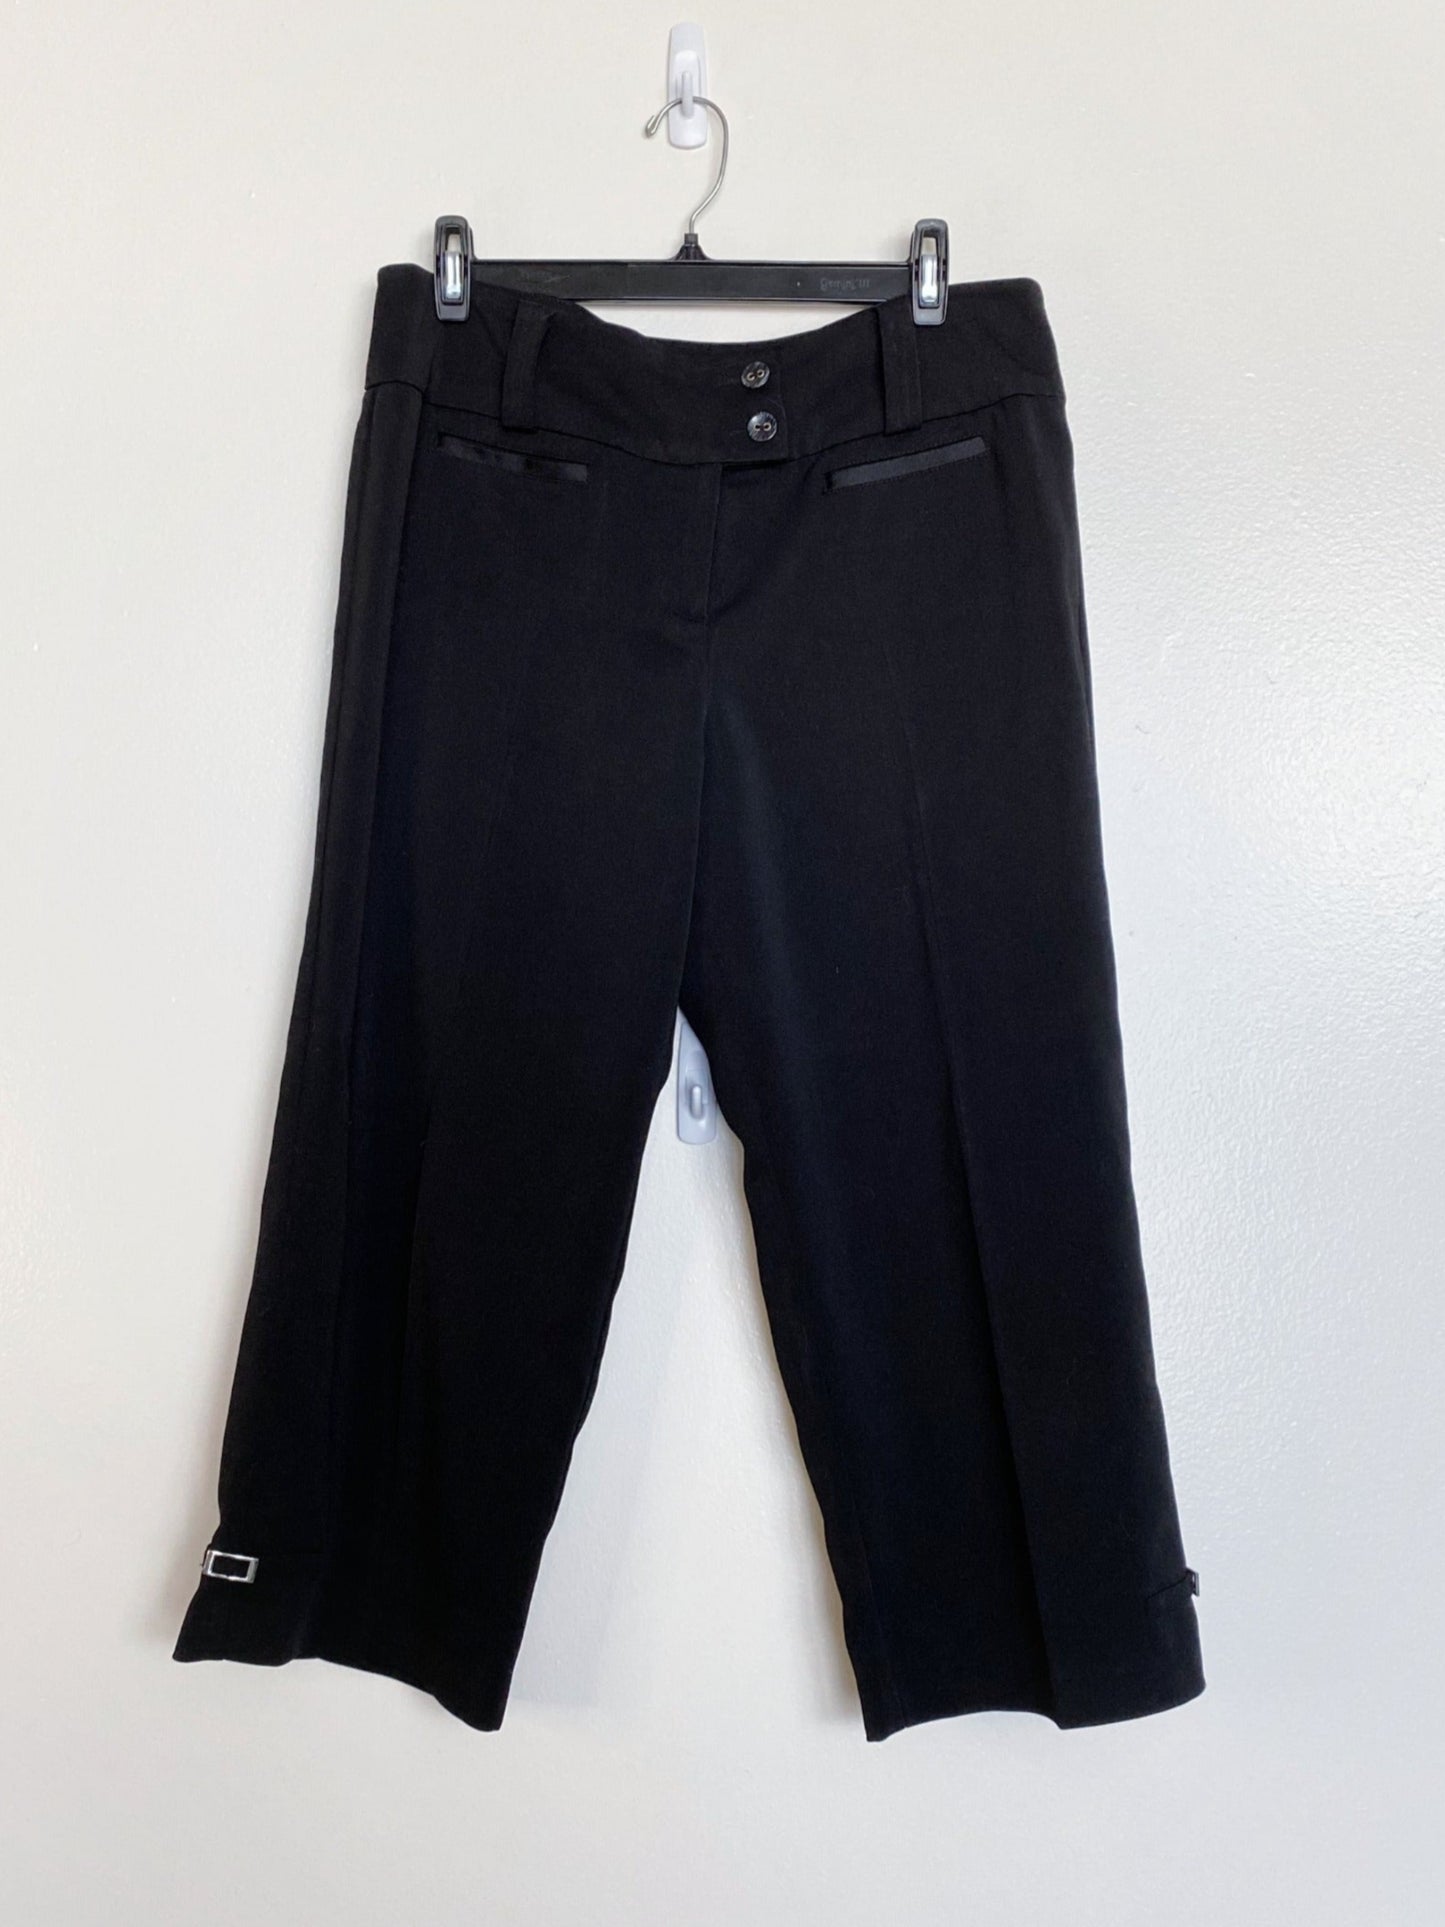 Black Capri Pants (Size 11)